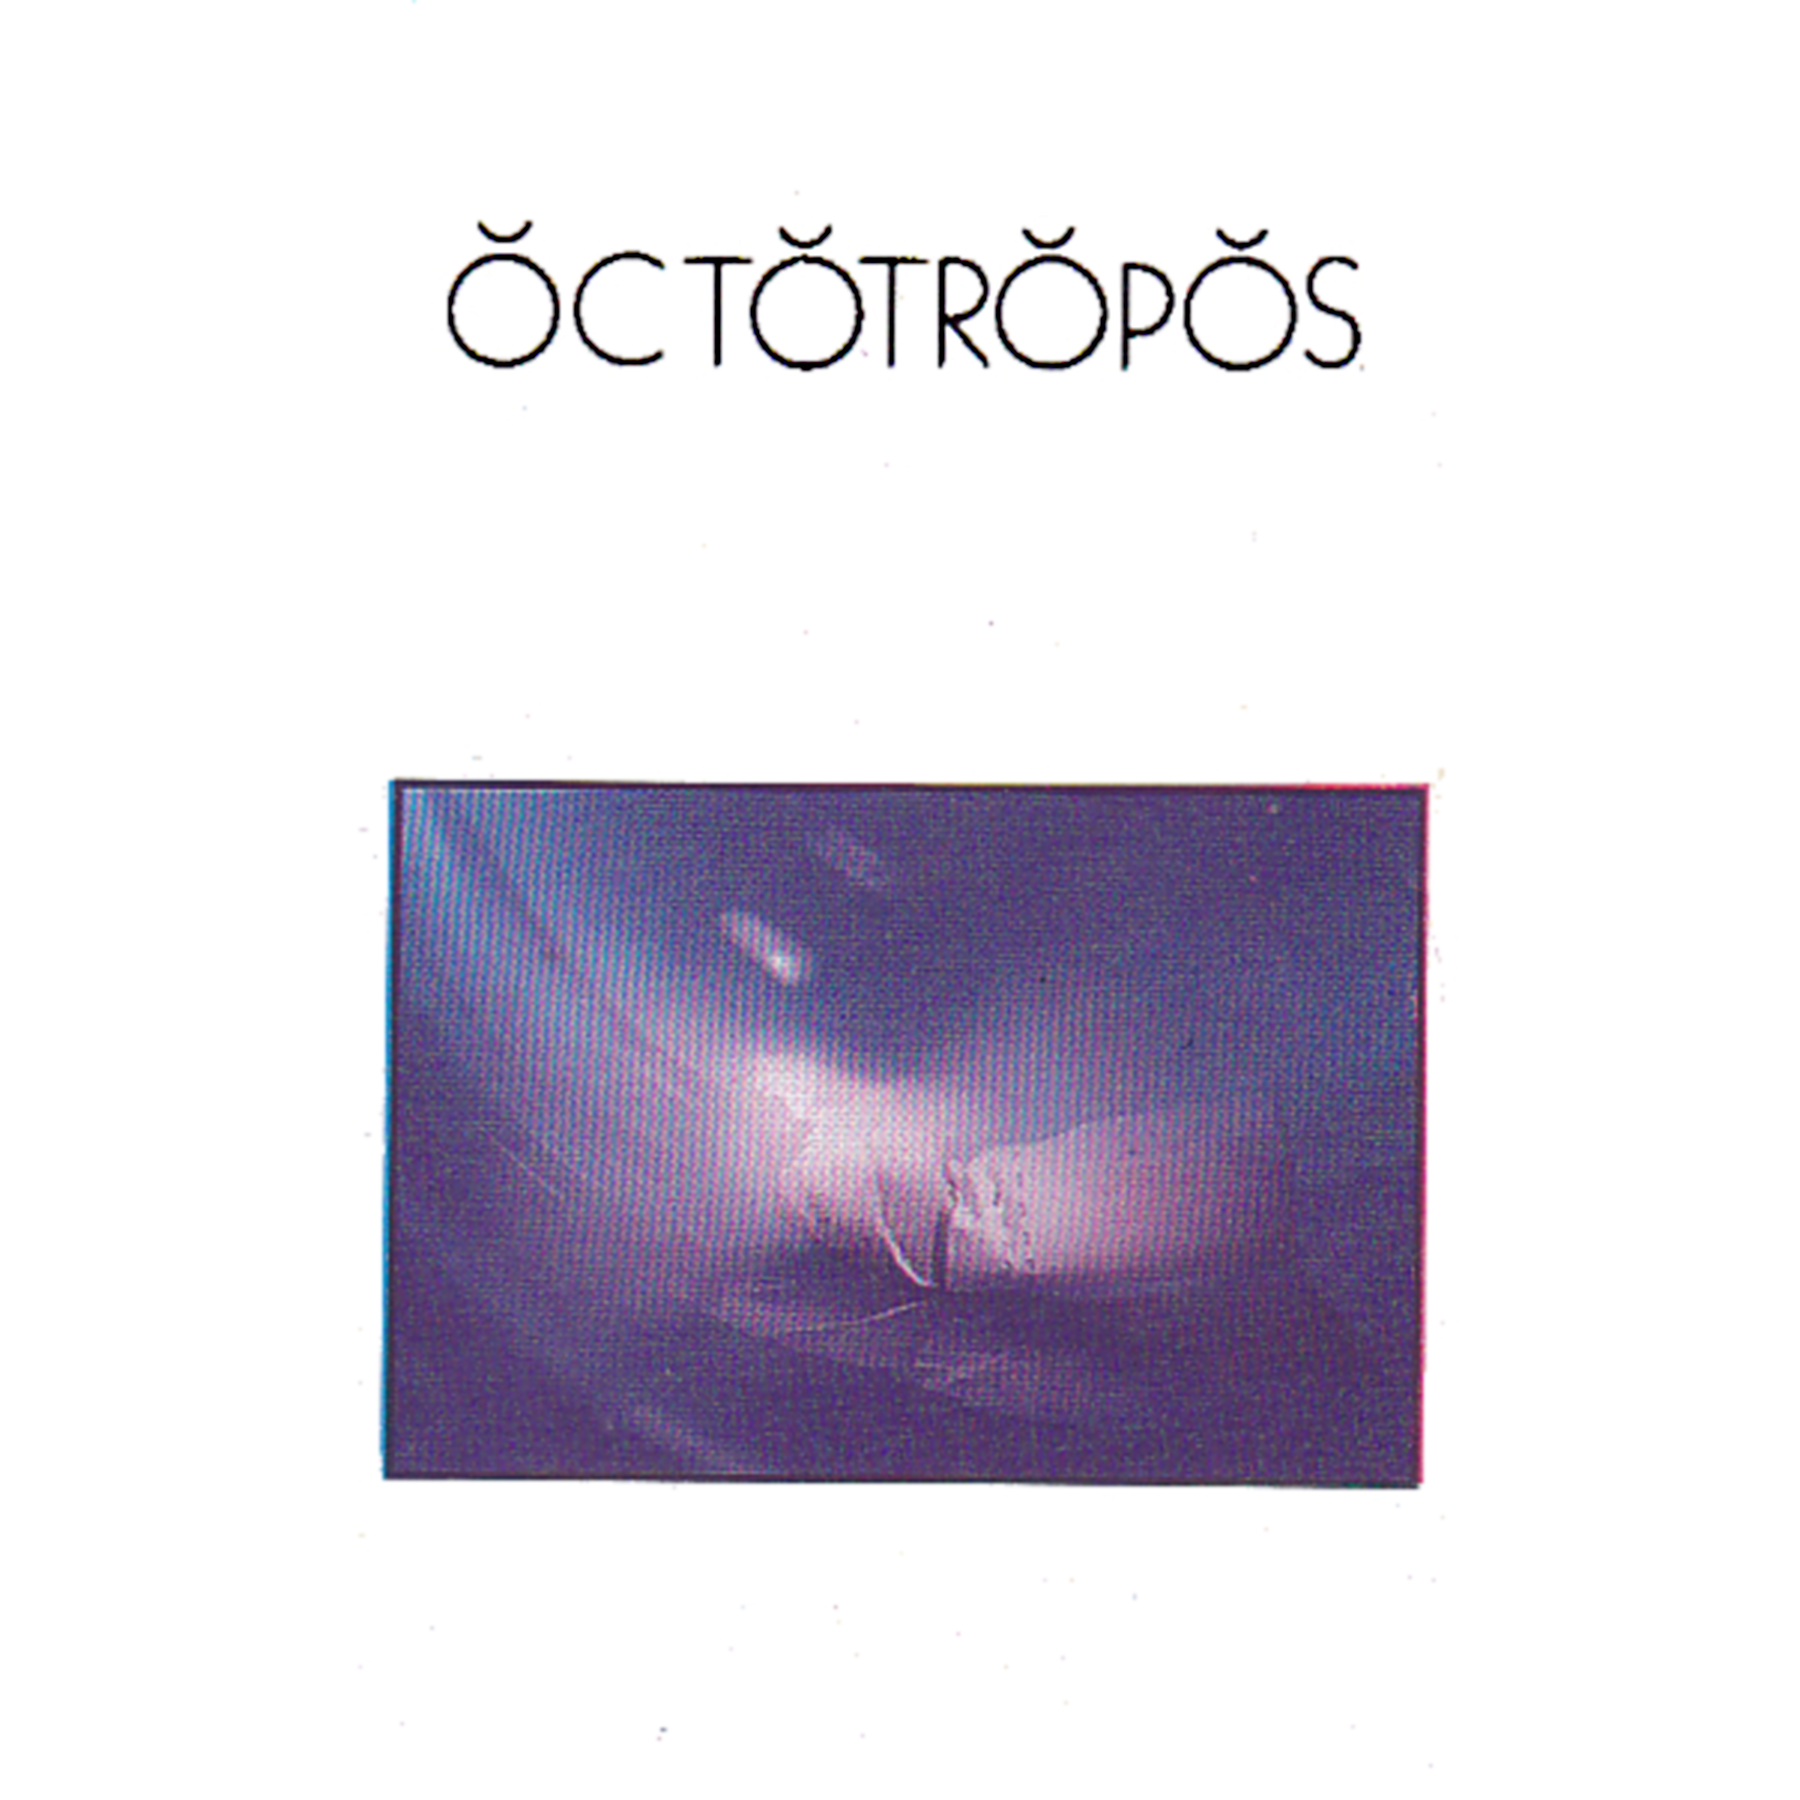 Octotropos - cover